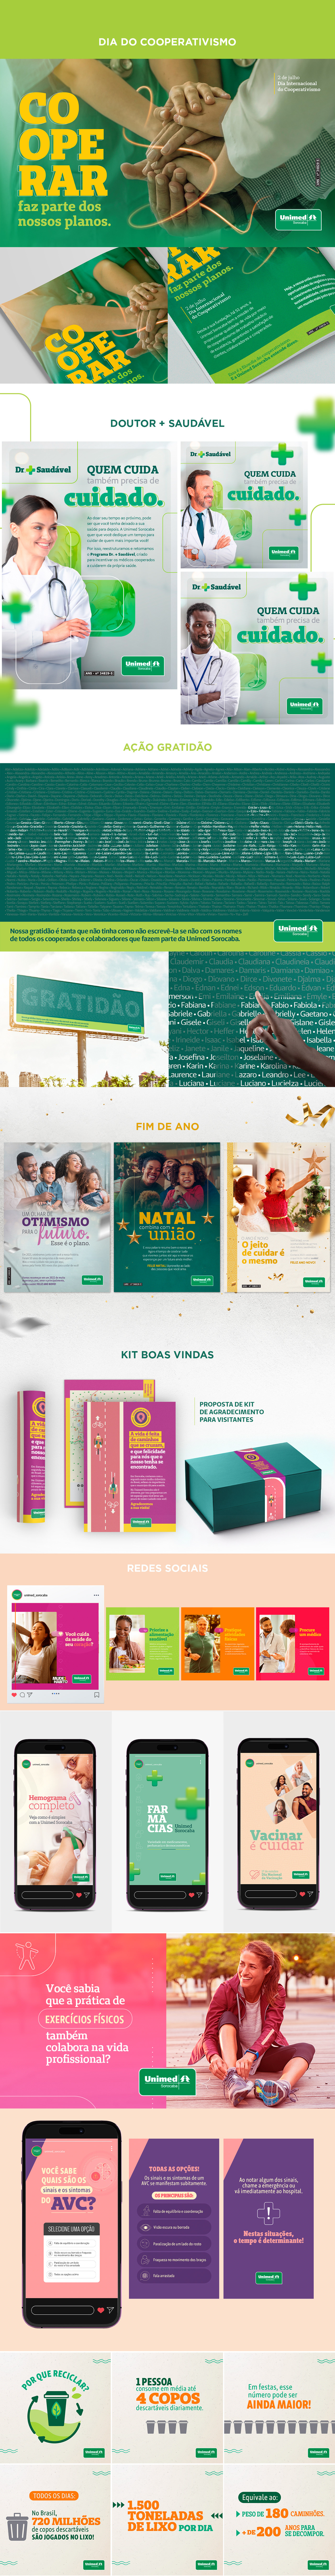 Unimed kv Socialmedia confraternização cooperativismo natal farmacia unimedsorocaba